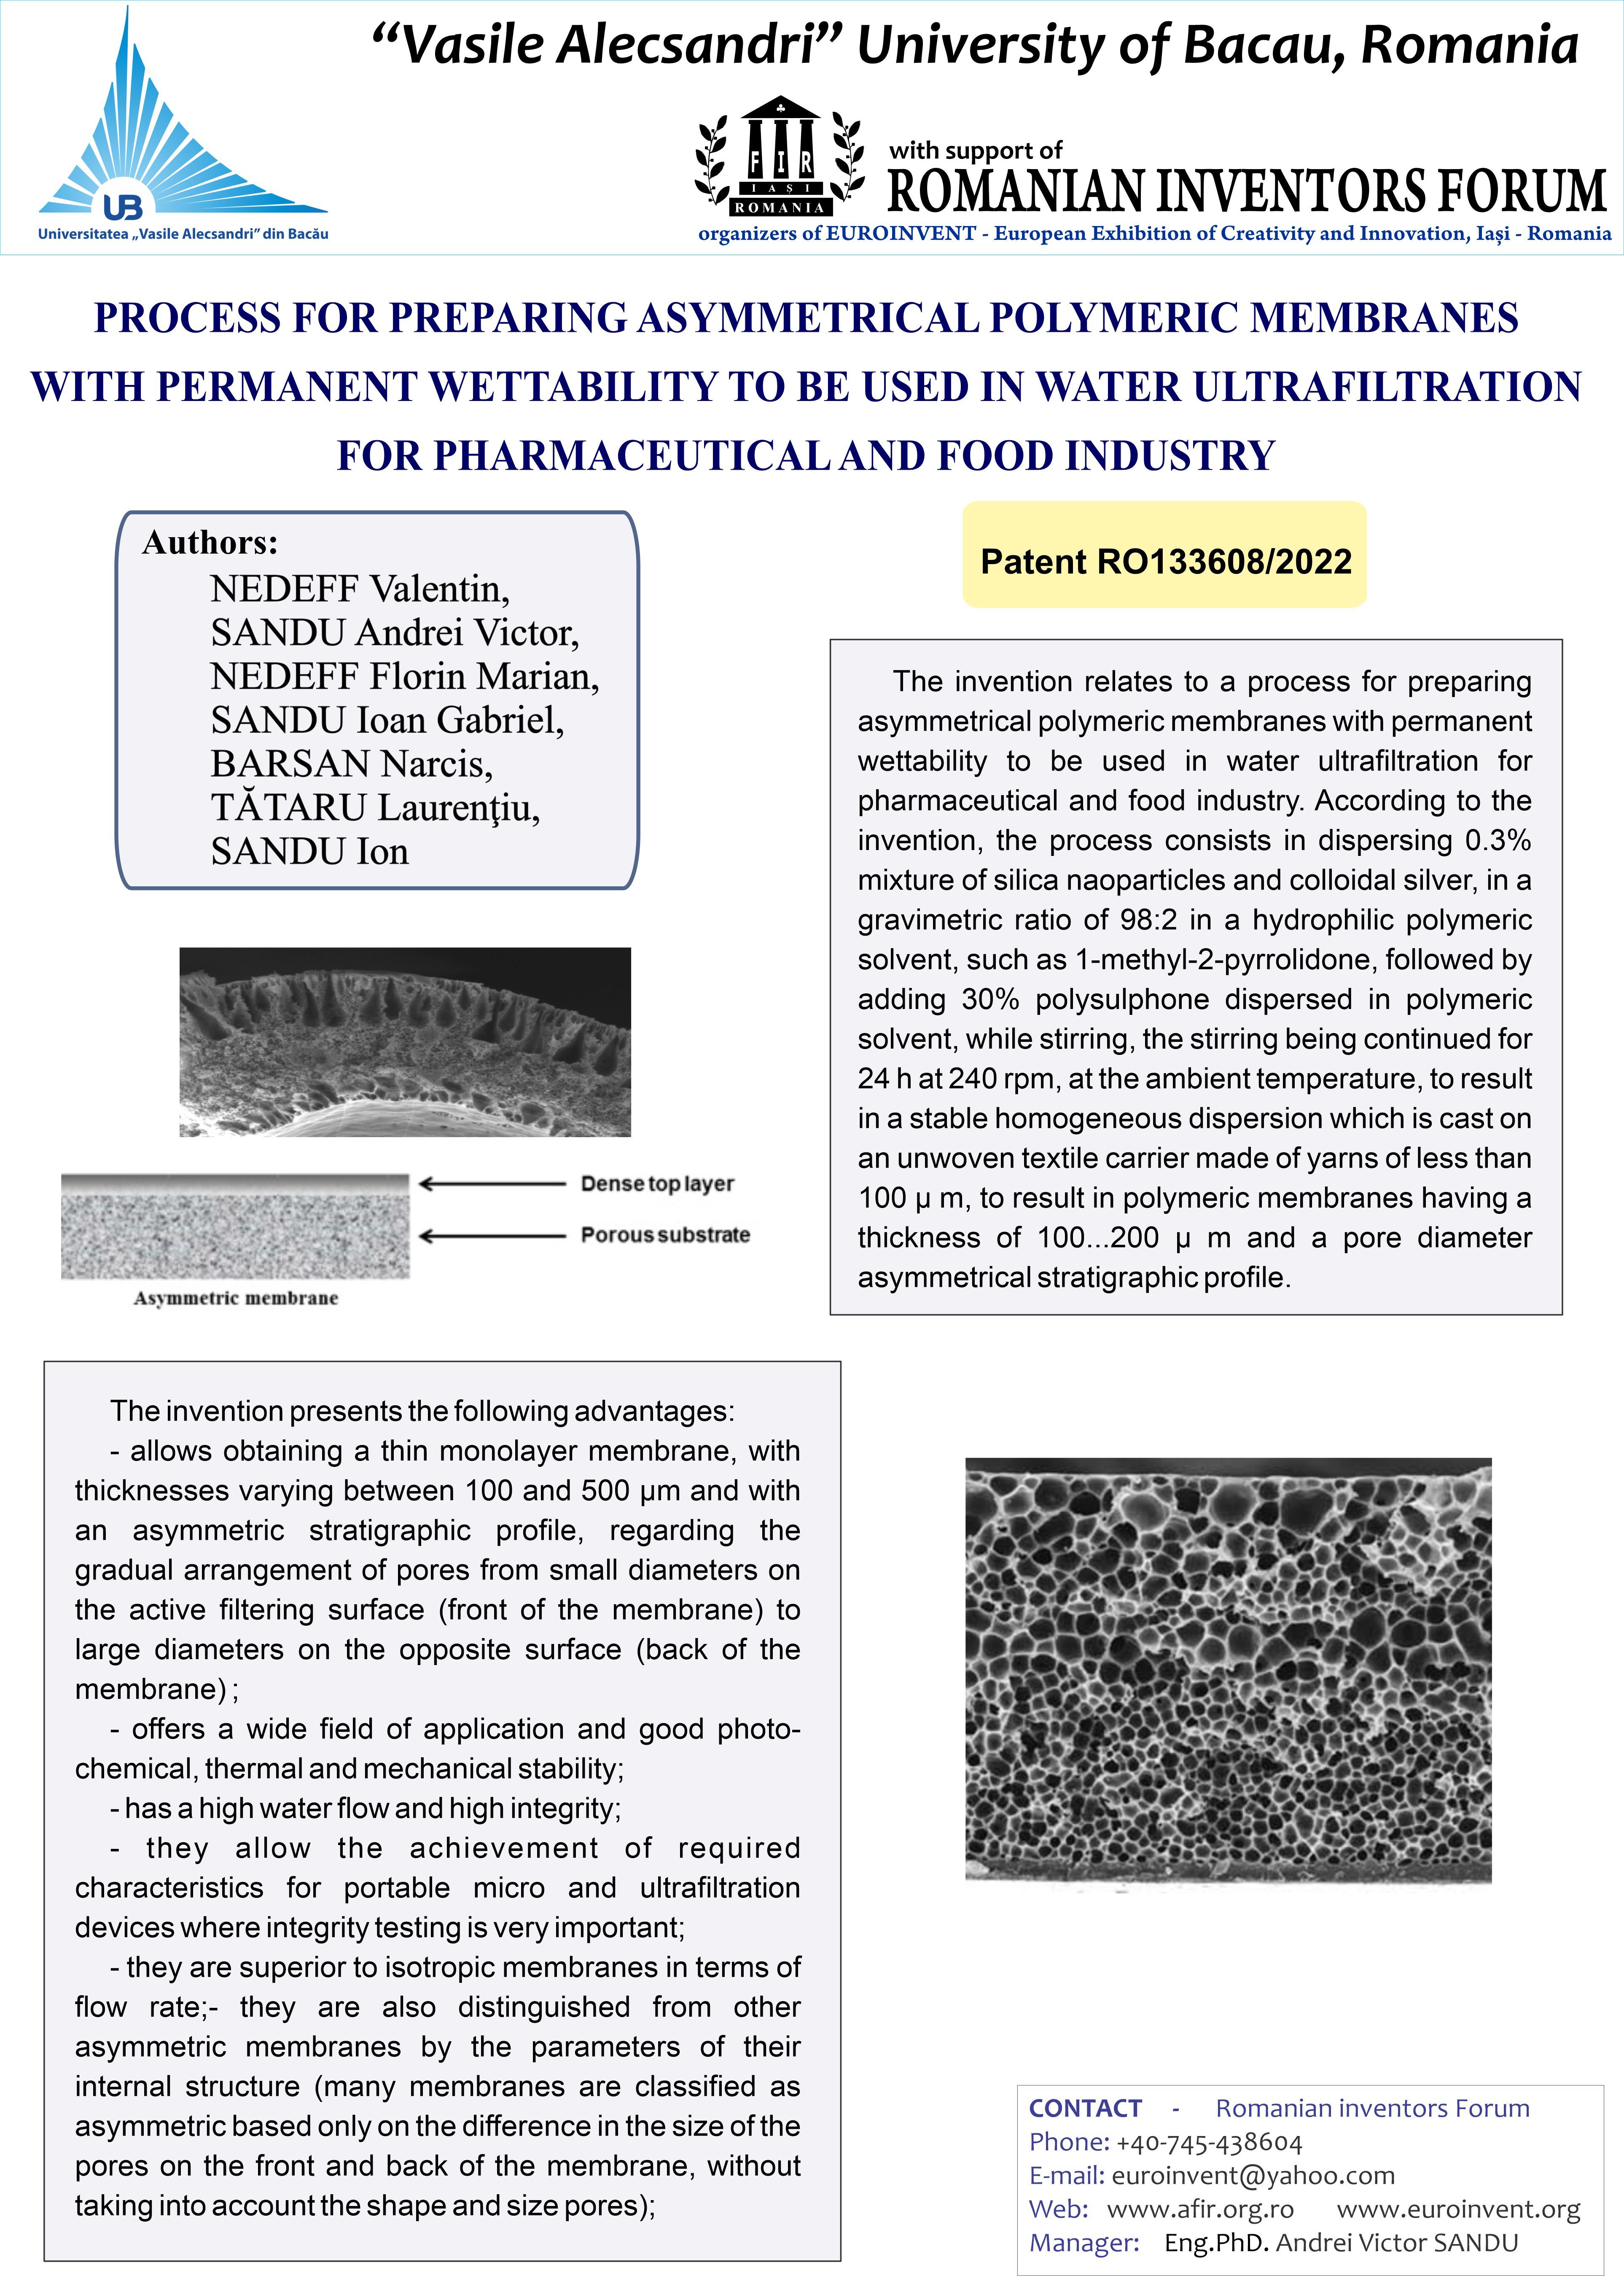 Postupak za dobivanje asimetričnih polimernih membrana s trajnom hidrofilnošću koja se koristi u ultrafiltraciji vode za farmaceutsku i prehrambenu industriju